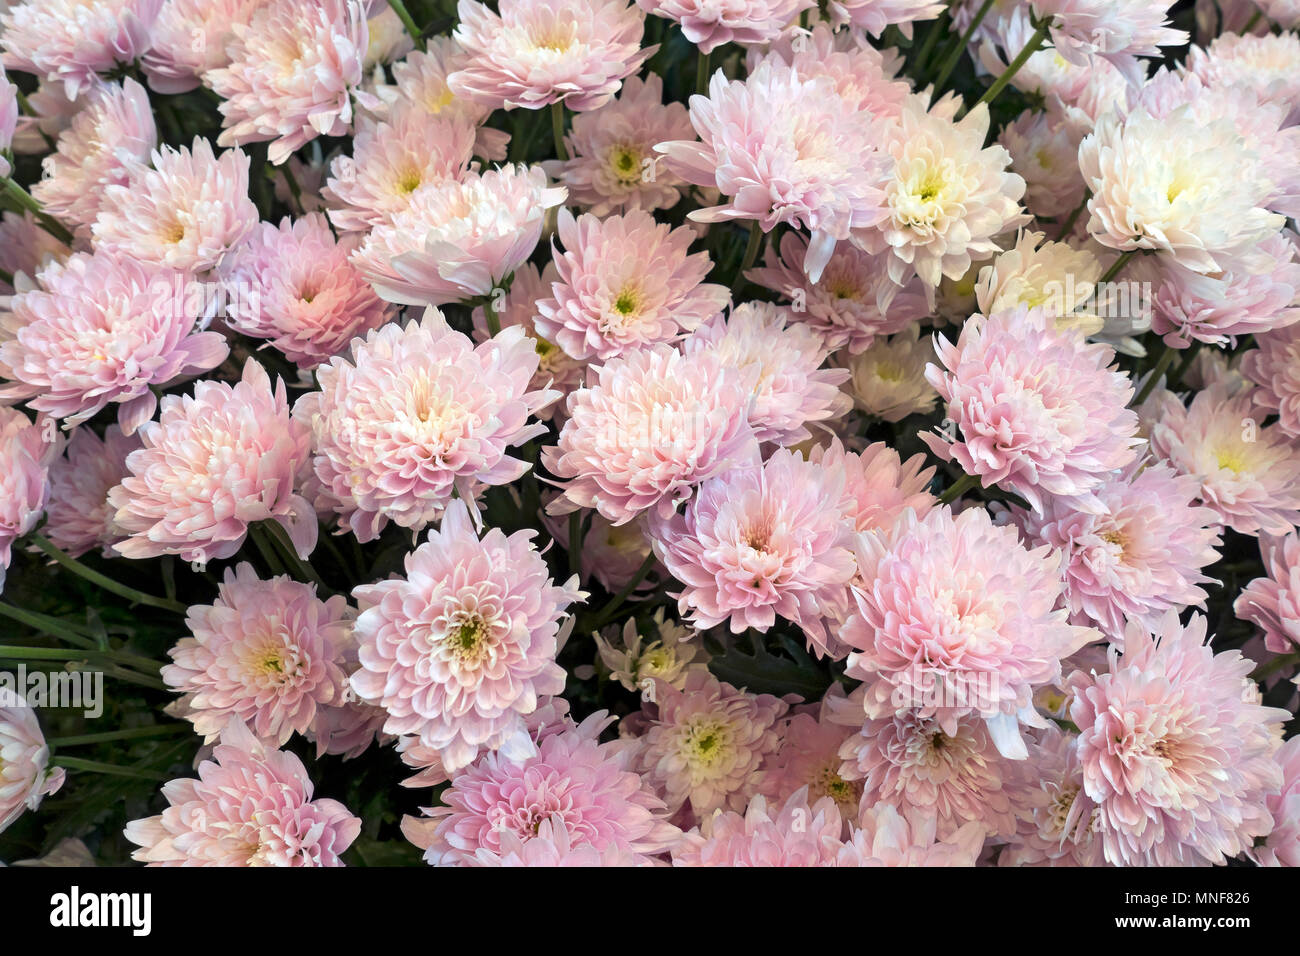 Gros plan des chrysanthèmes roses fleurs chrysanthème fleur Angleterre Royaume-Uni Grande-Bretagne Banque D'Images